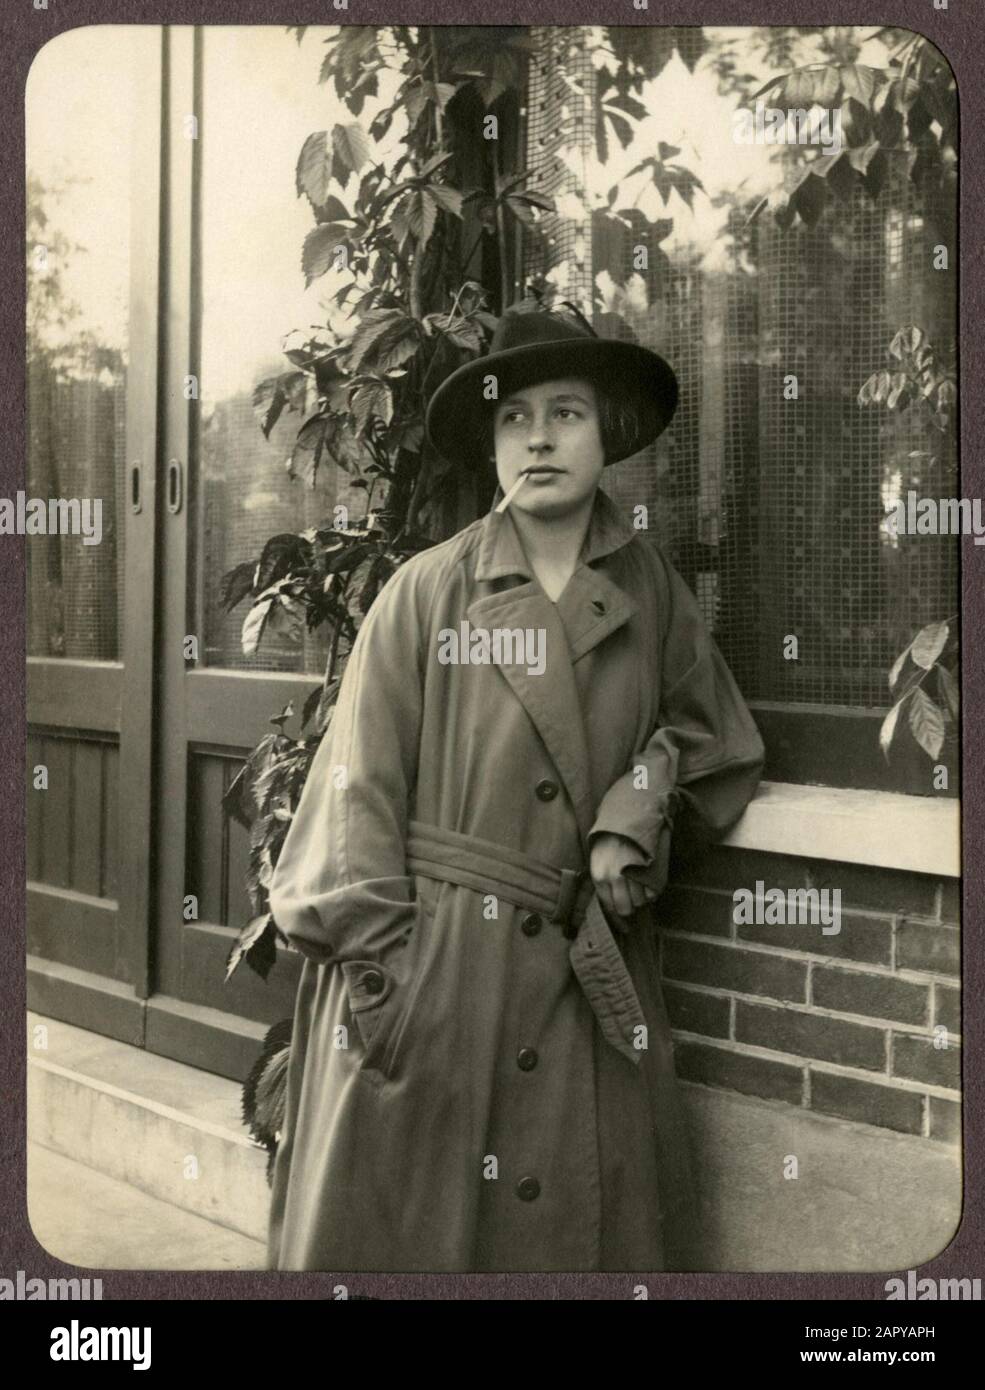 Donna in lungo impermeabile con cappello e sigaretta in bocca, appoggiata contro una finestra. Paesi Bassi, 1926. Questa foto fa parte di una serie di foto digitalizzate lo-Res da un toalbum privato. Foto Stock